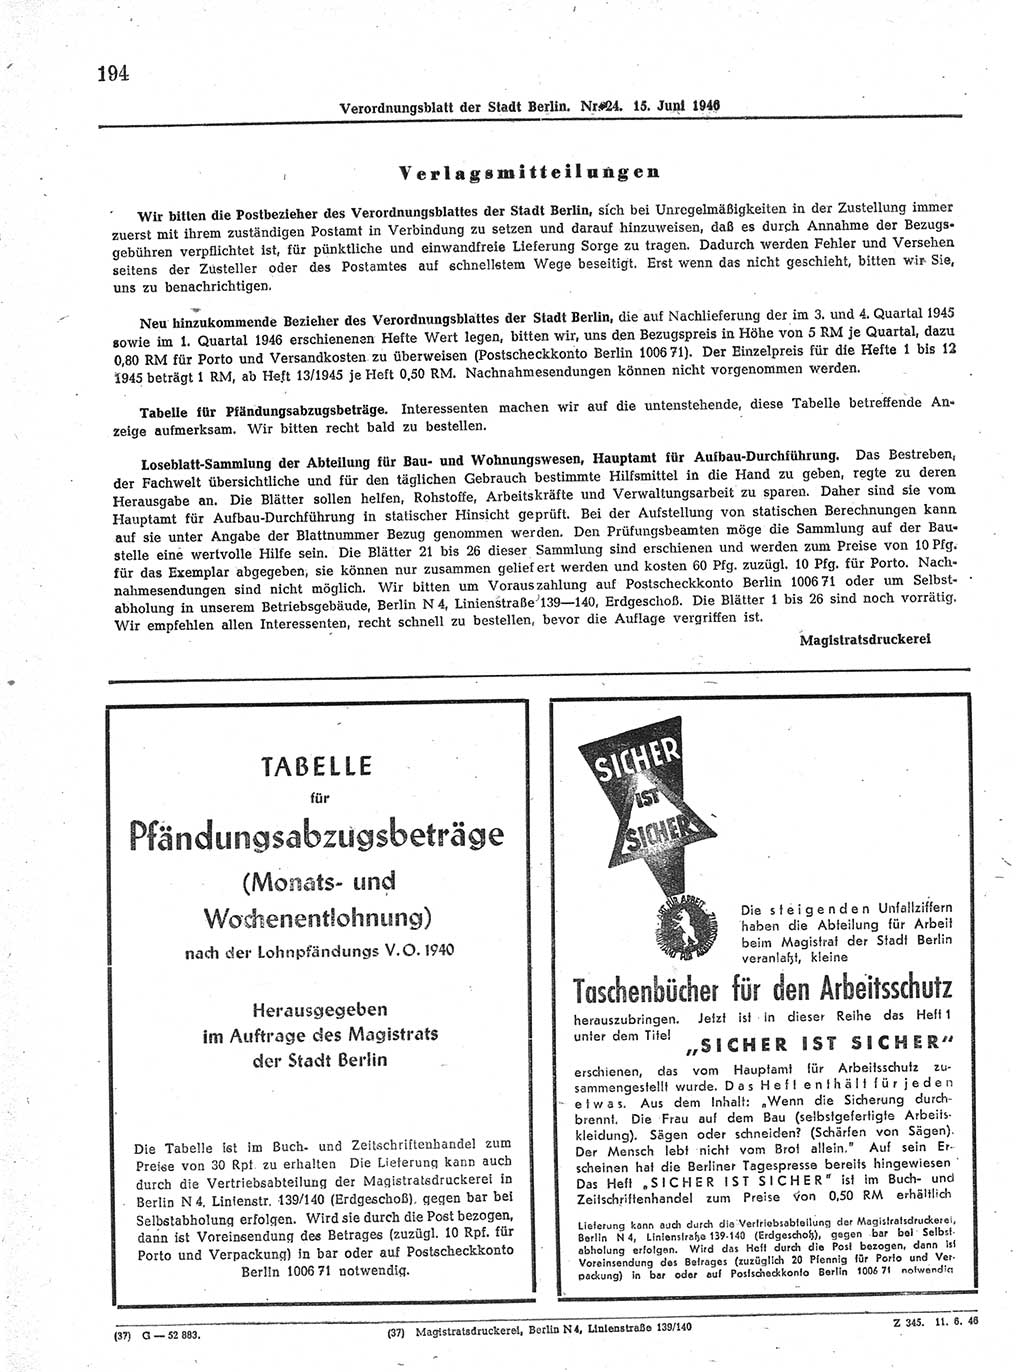 Verordnungsblatt (VOBl.) der Stadt Berlin, für Groß-Berlin 1946, Seite 194 (VOBl. Bln. 1946, S. 194)